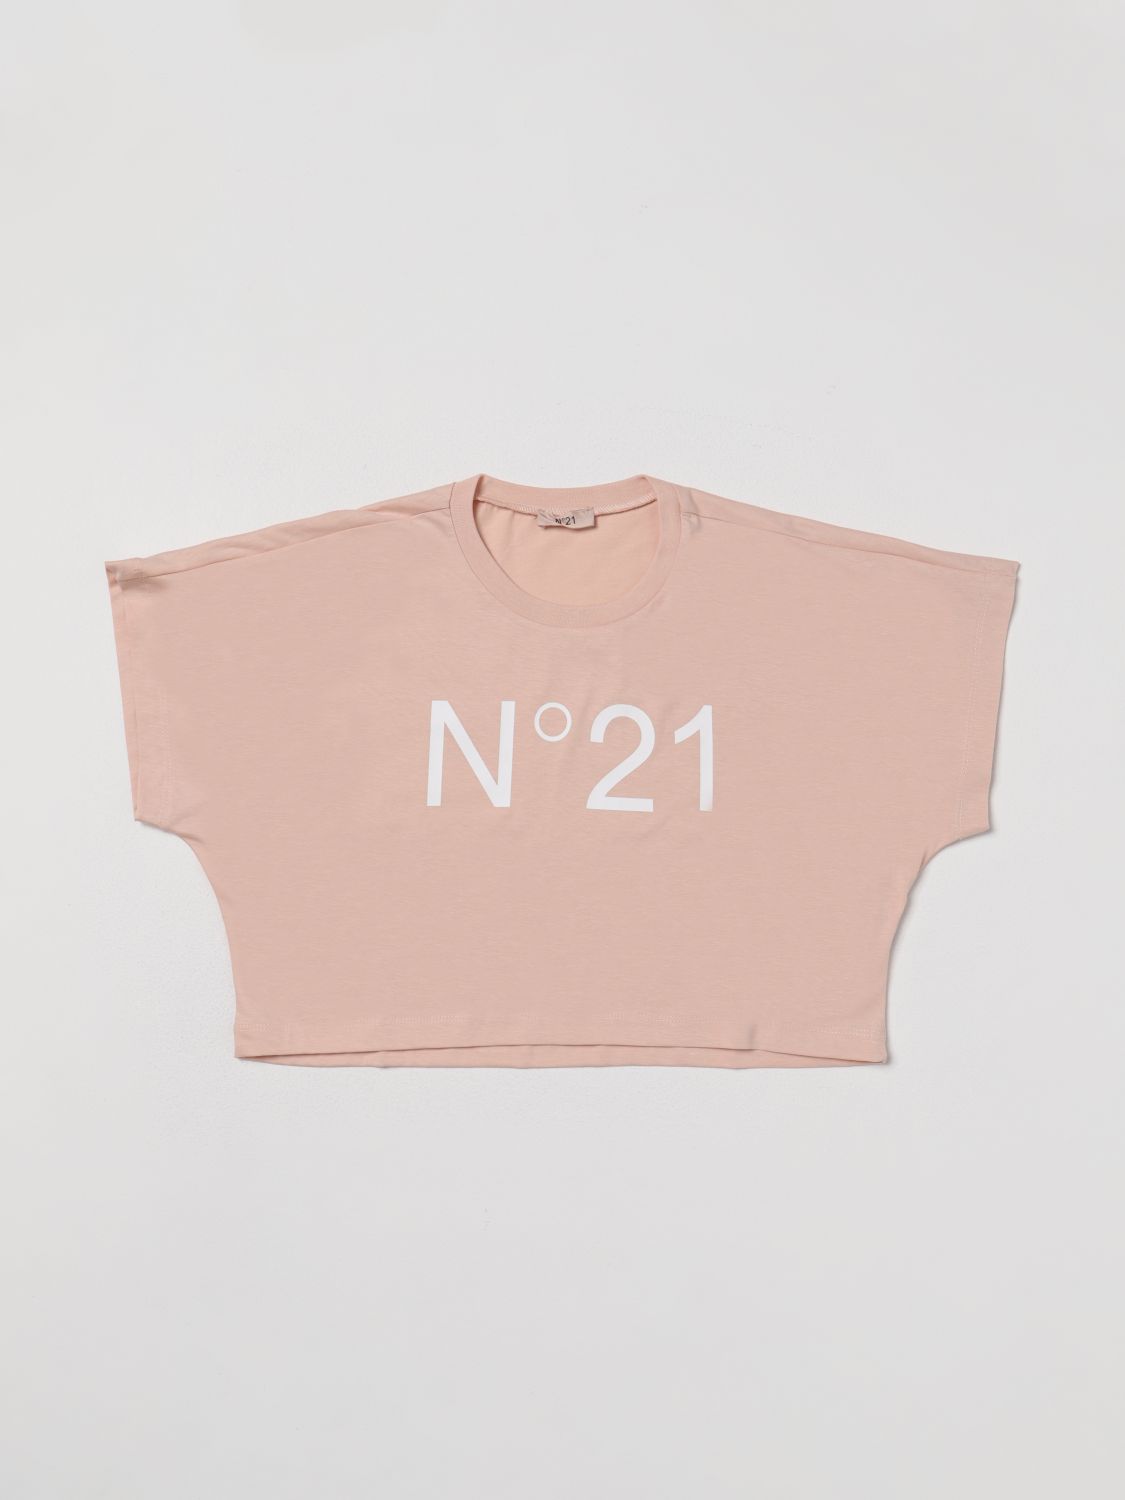 N°21 Kids' T恤 N° 21 儿童 颜色 粉色 In Pink